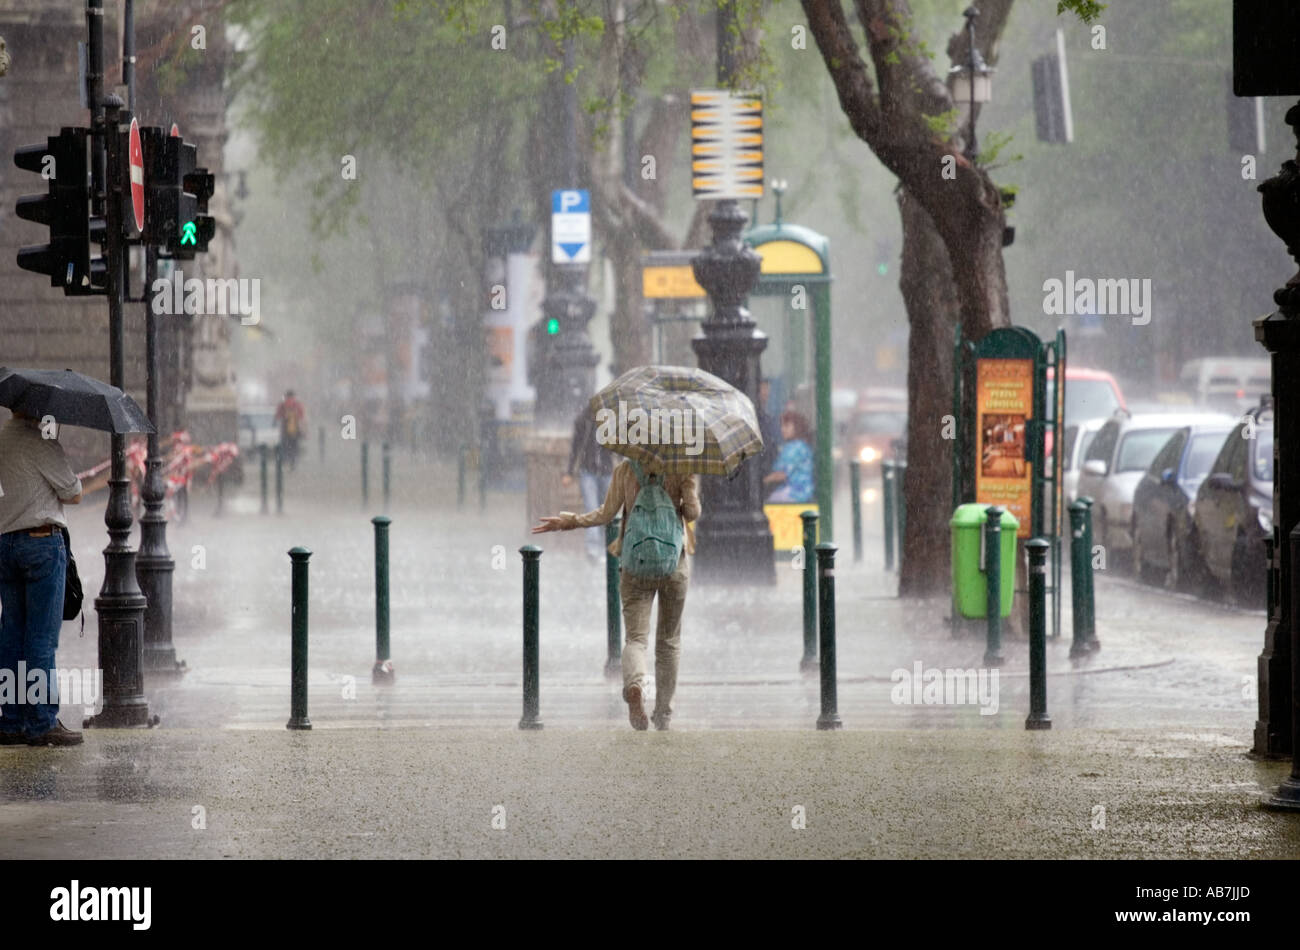 Une tempête de pluie sur la rue Andrassy à Budapest Hongrie Avril 2006 Banque D'Images